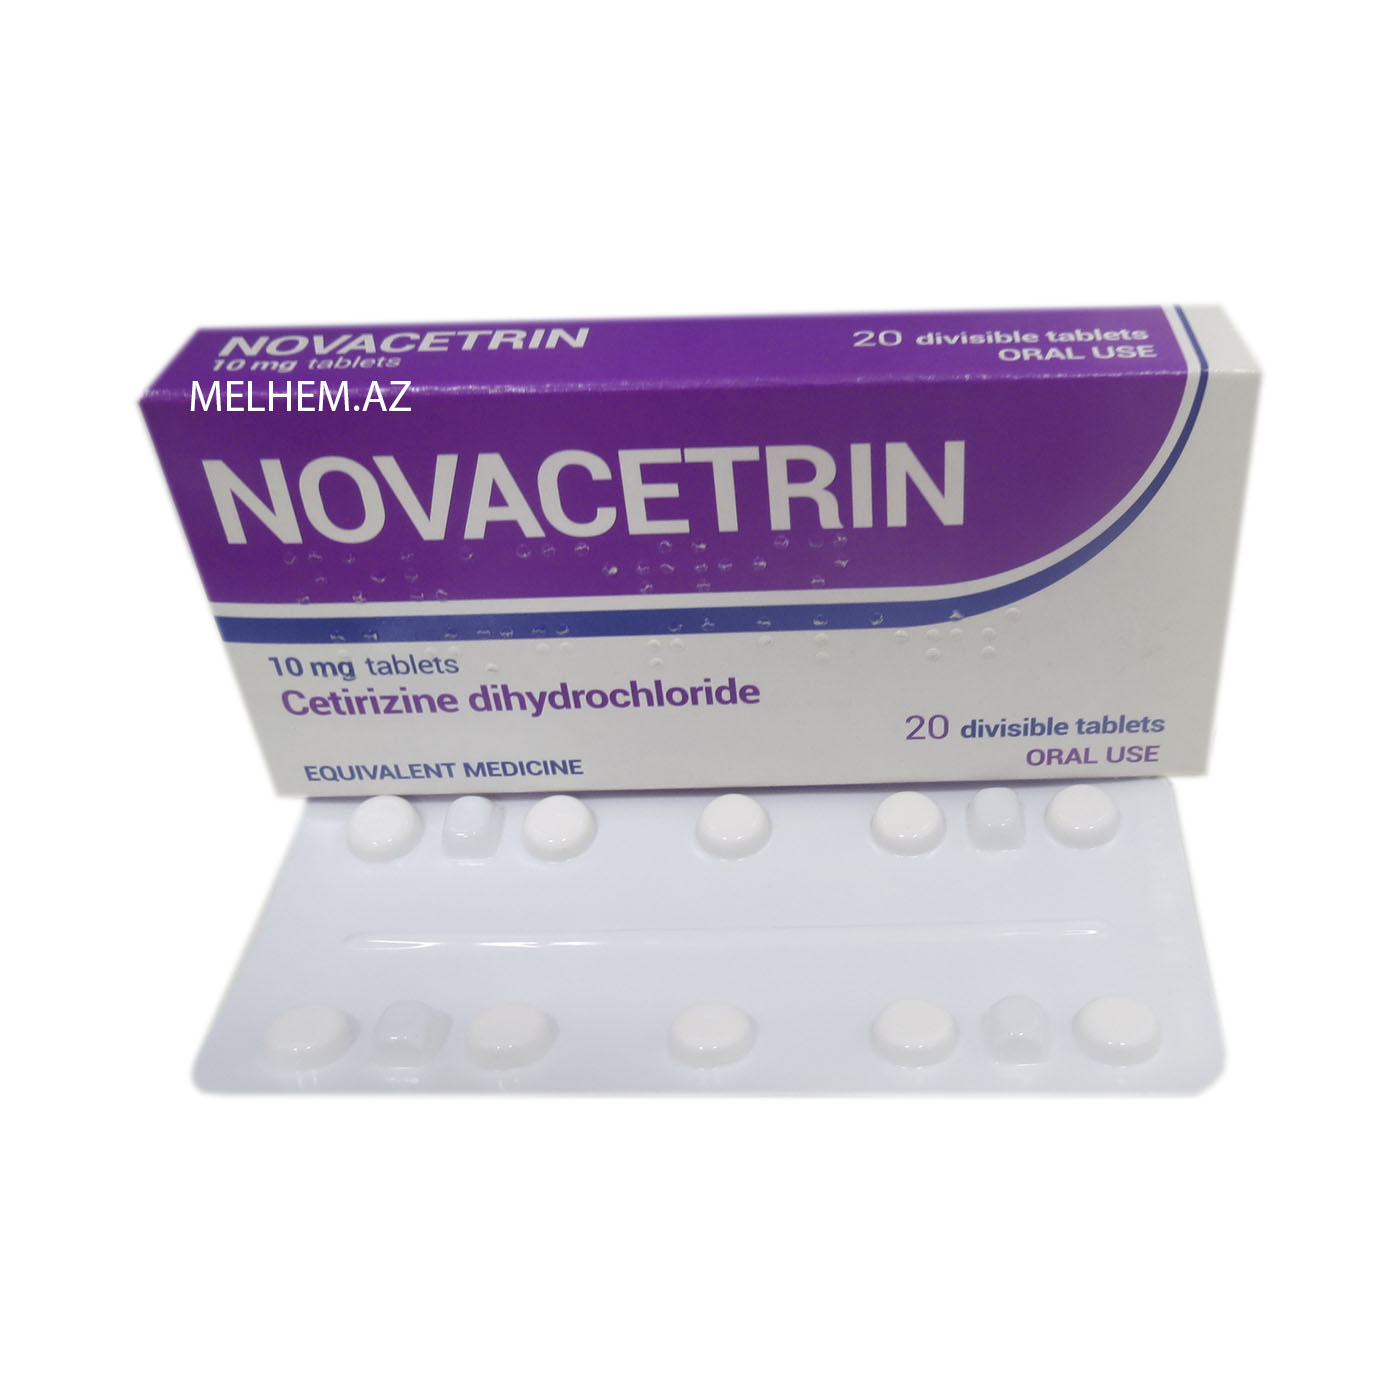 Novacetrin - image 0